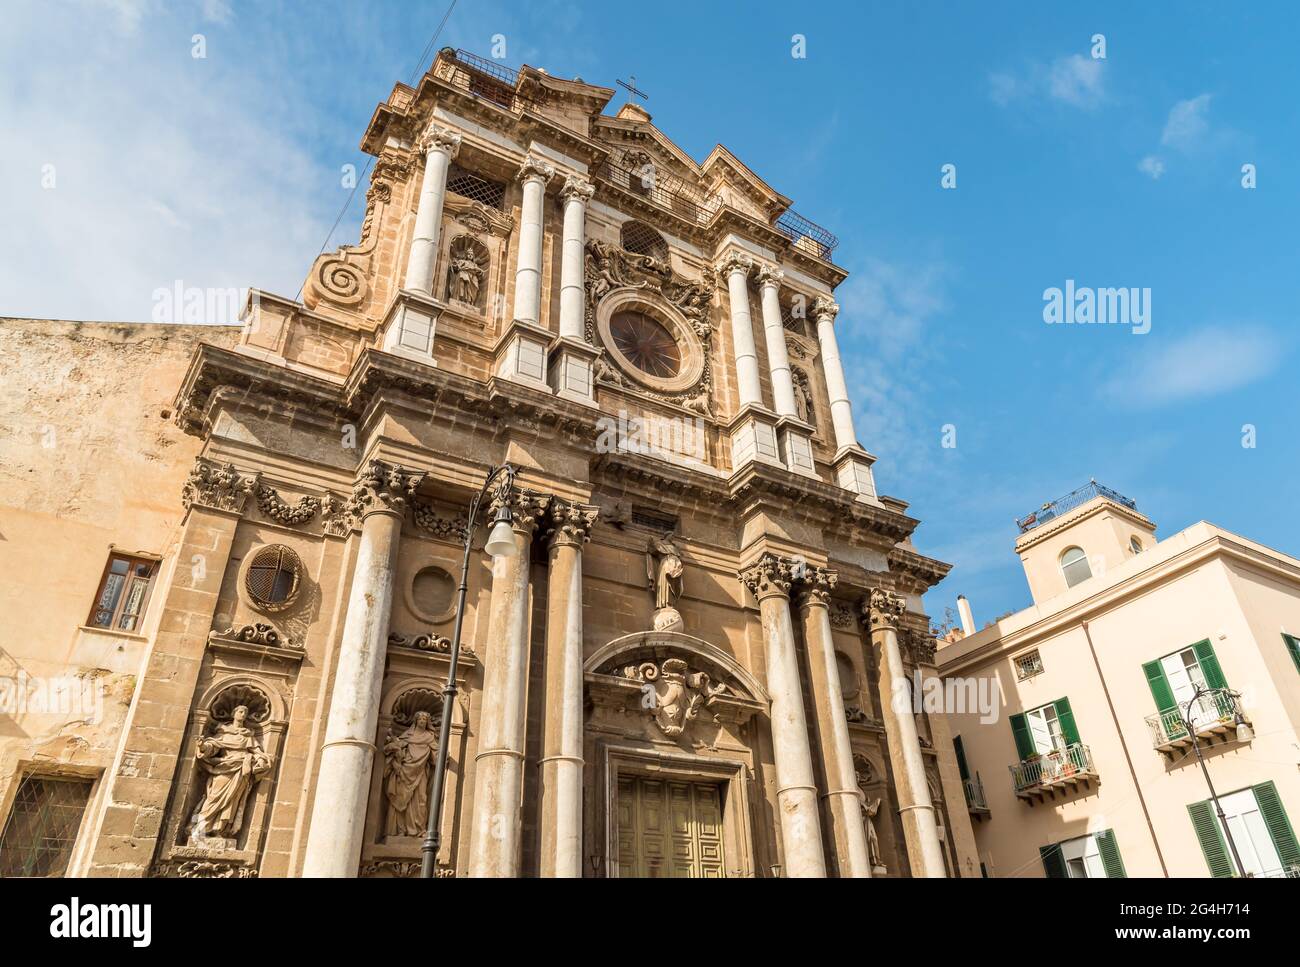 Parish Church of Santa Maria della Pieta in Palermo, Sicily, Italy Stock Photo